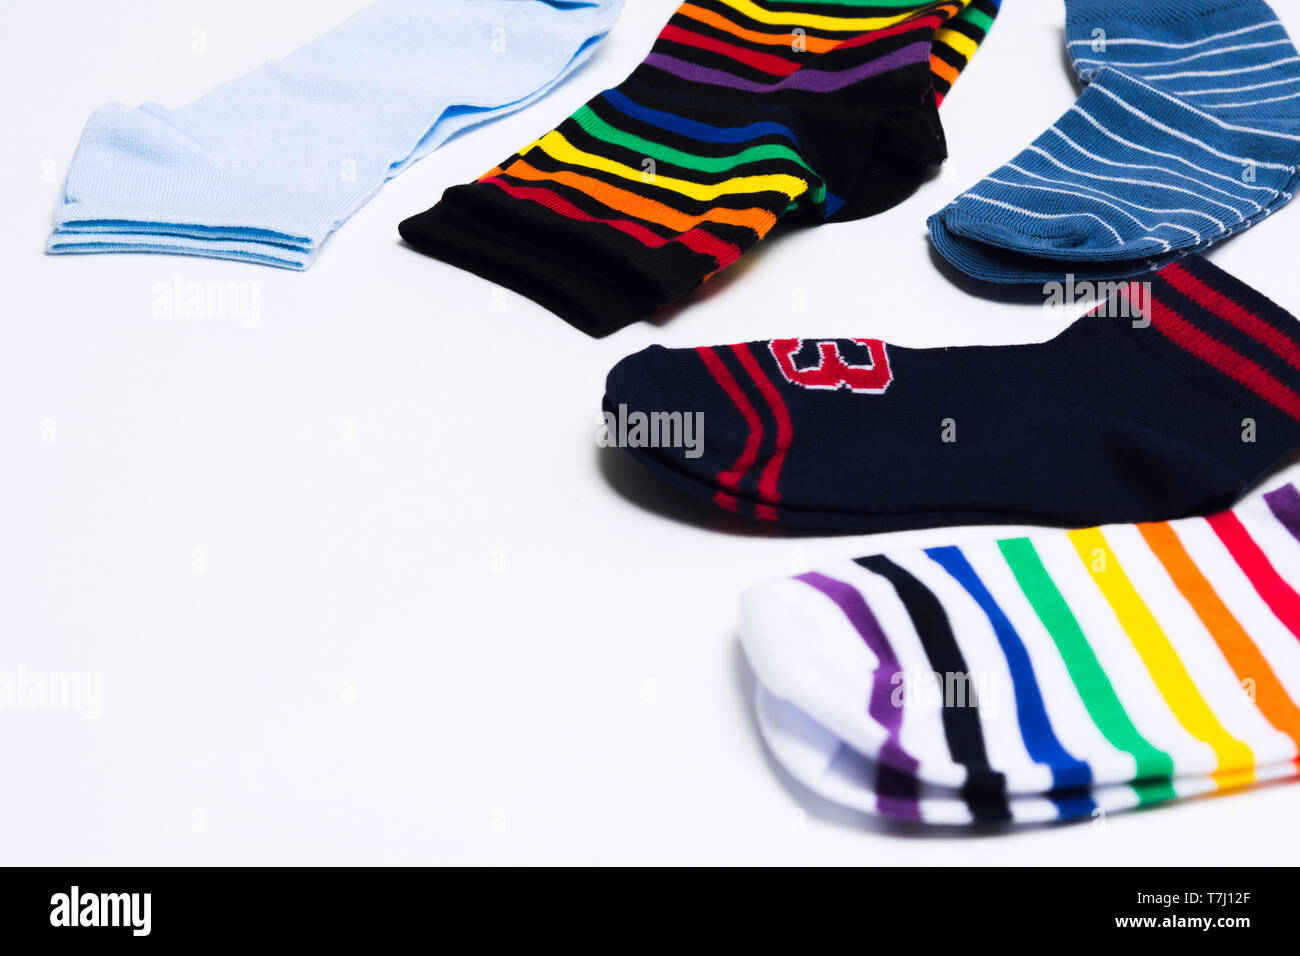 Vêtements textiles colorés différents pour les jambes, des chaussettes sur fond blanc avec l'exemplaire de l'espace. Focus sélectif. Shopping concept Banque D'Images